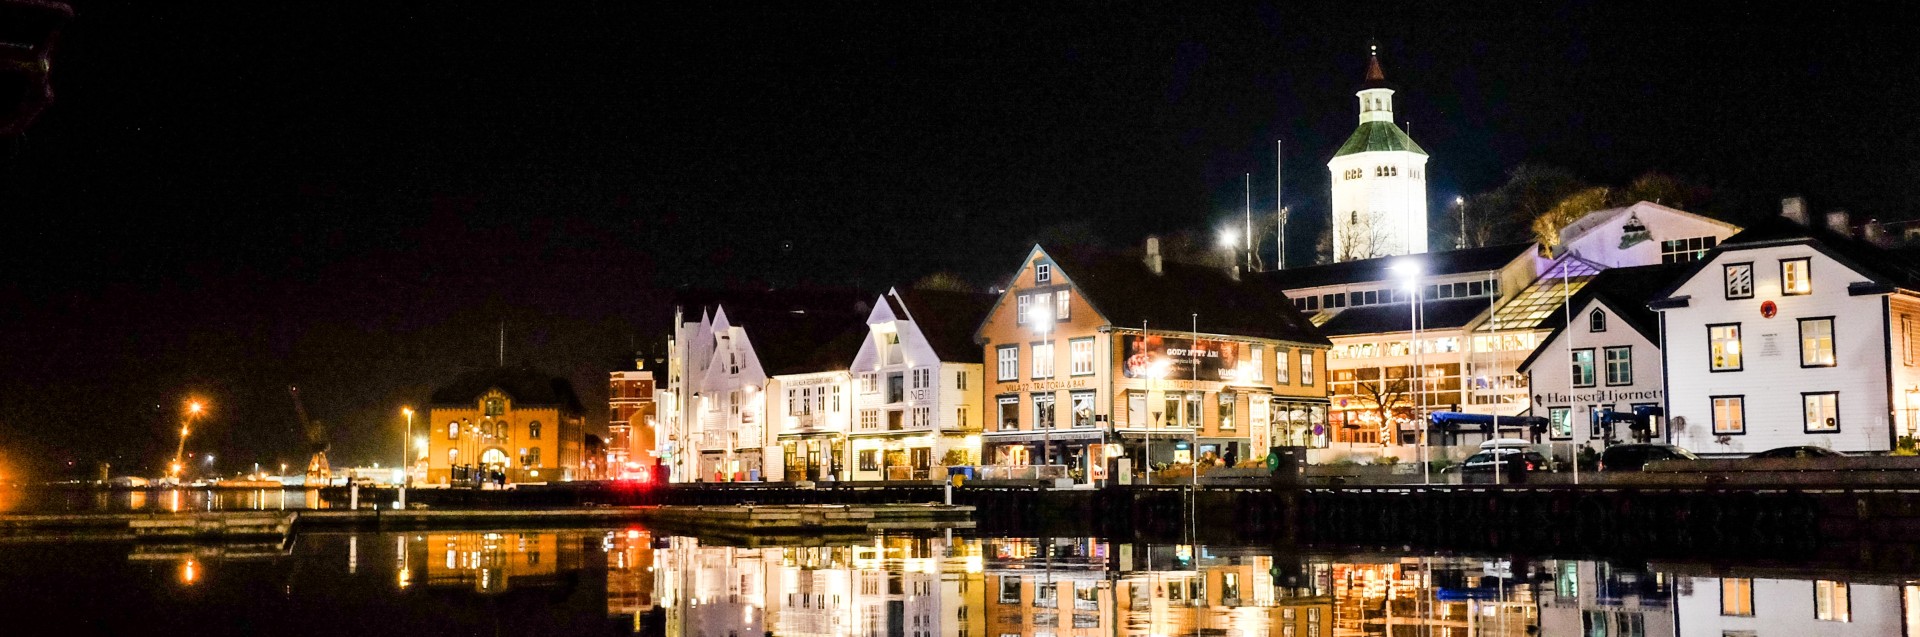 Bilde om natten av bygninger langs havnen i en by.